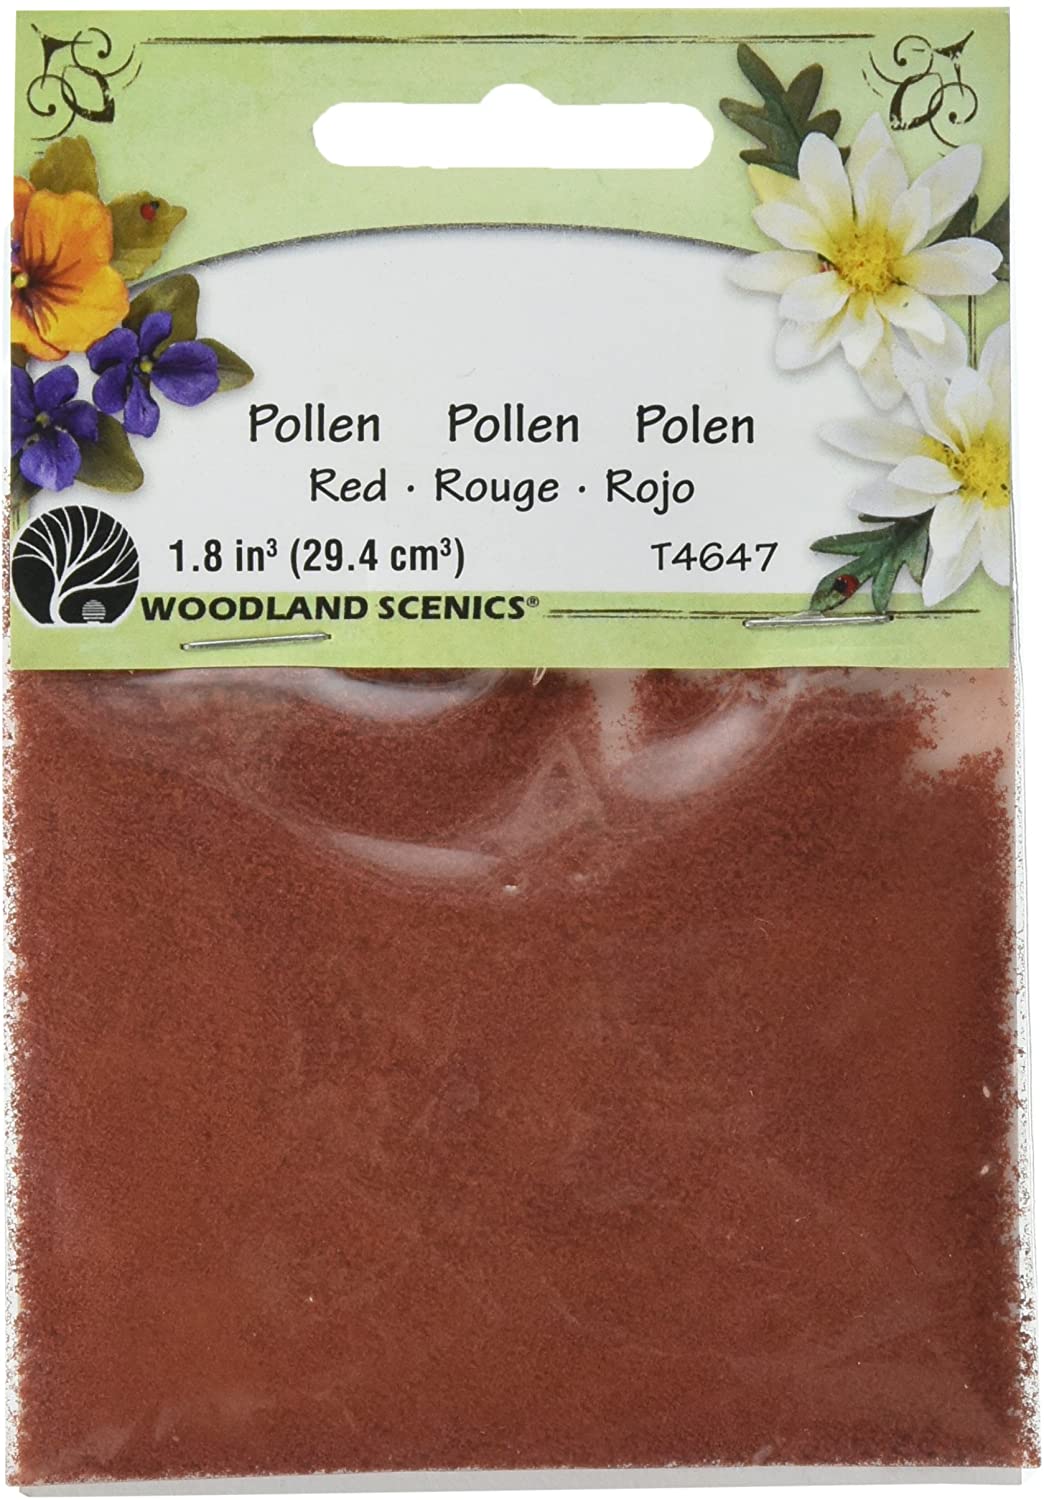 Pollen - Red